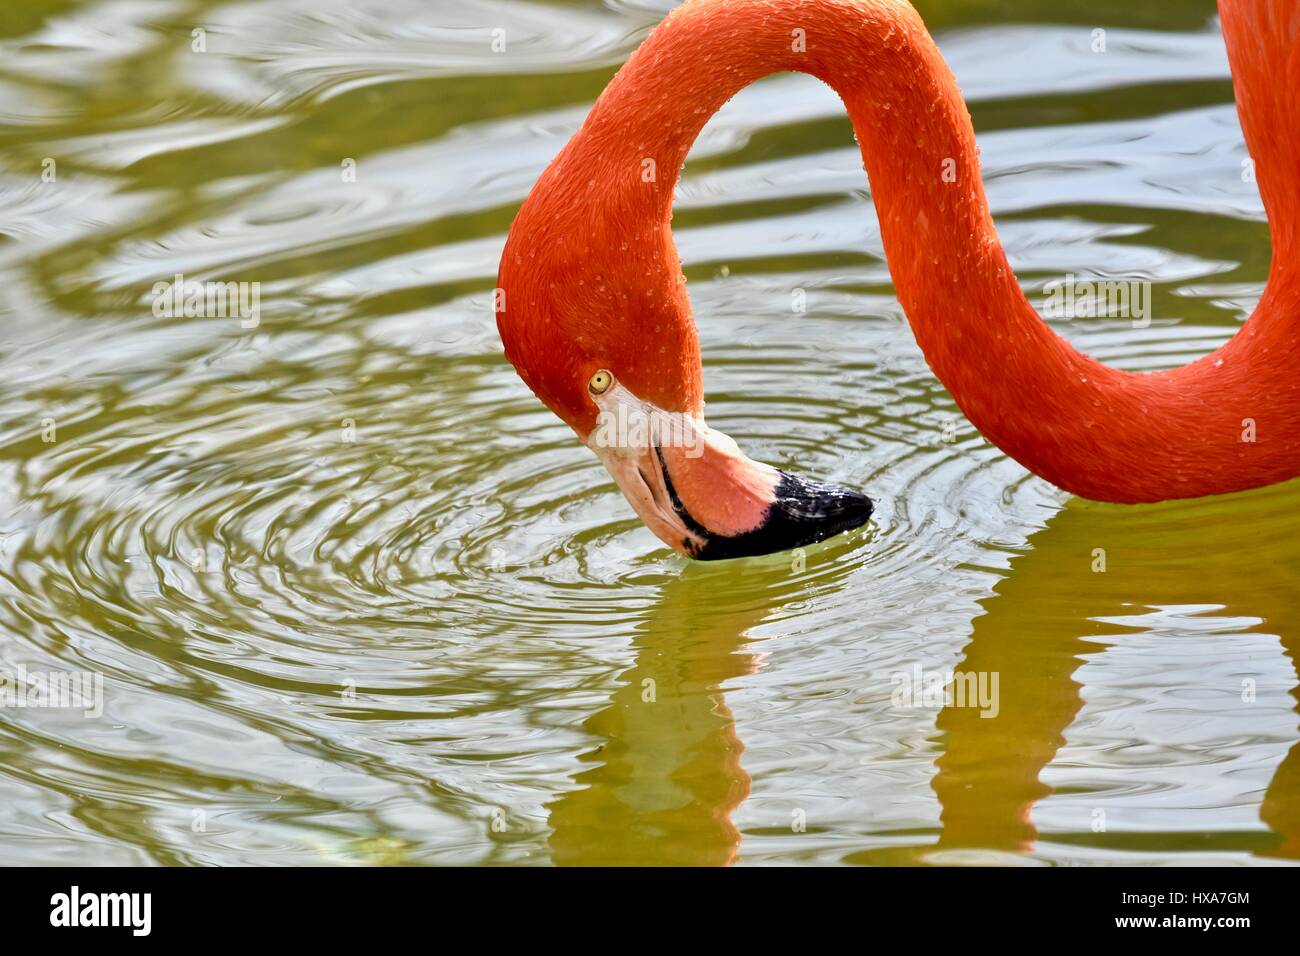 Caribbean Flamingo  (Pheonicopterus ruber ruber) Stock Photo